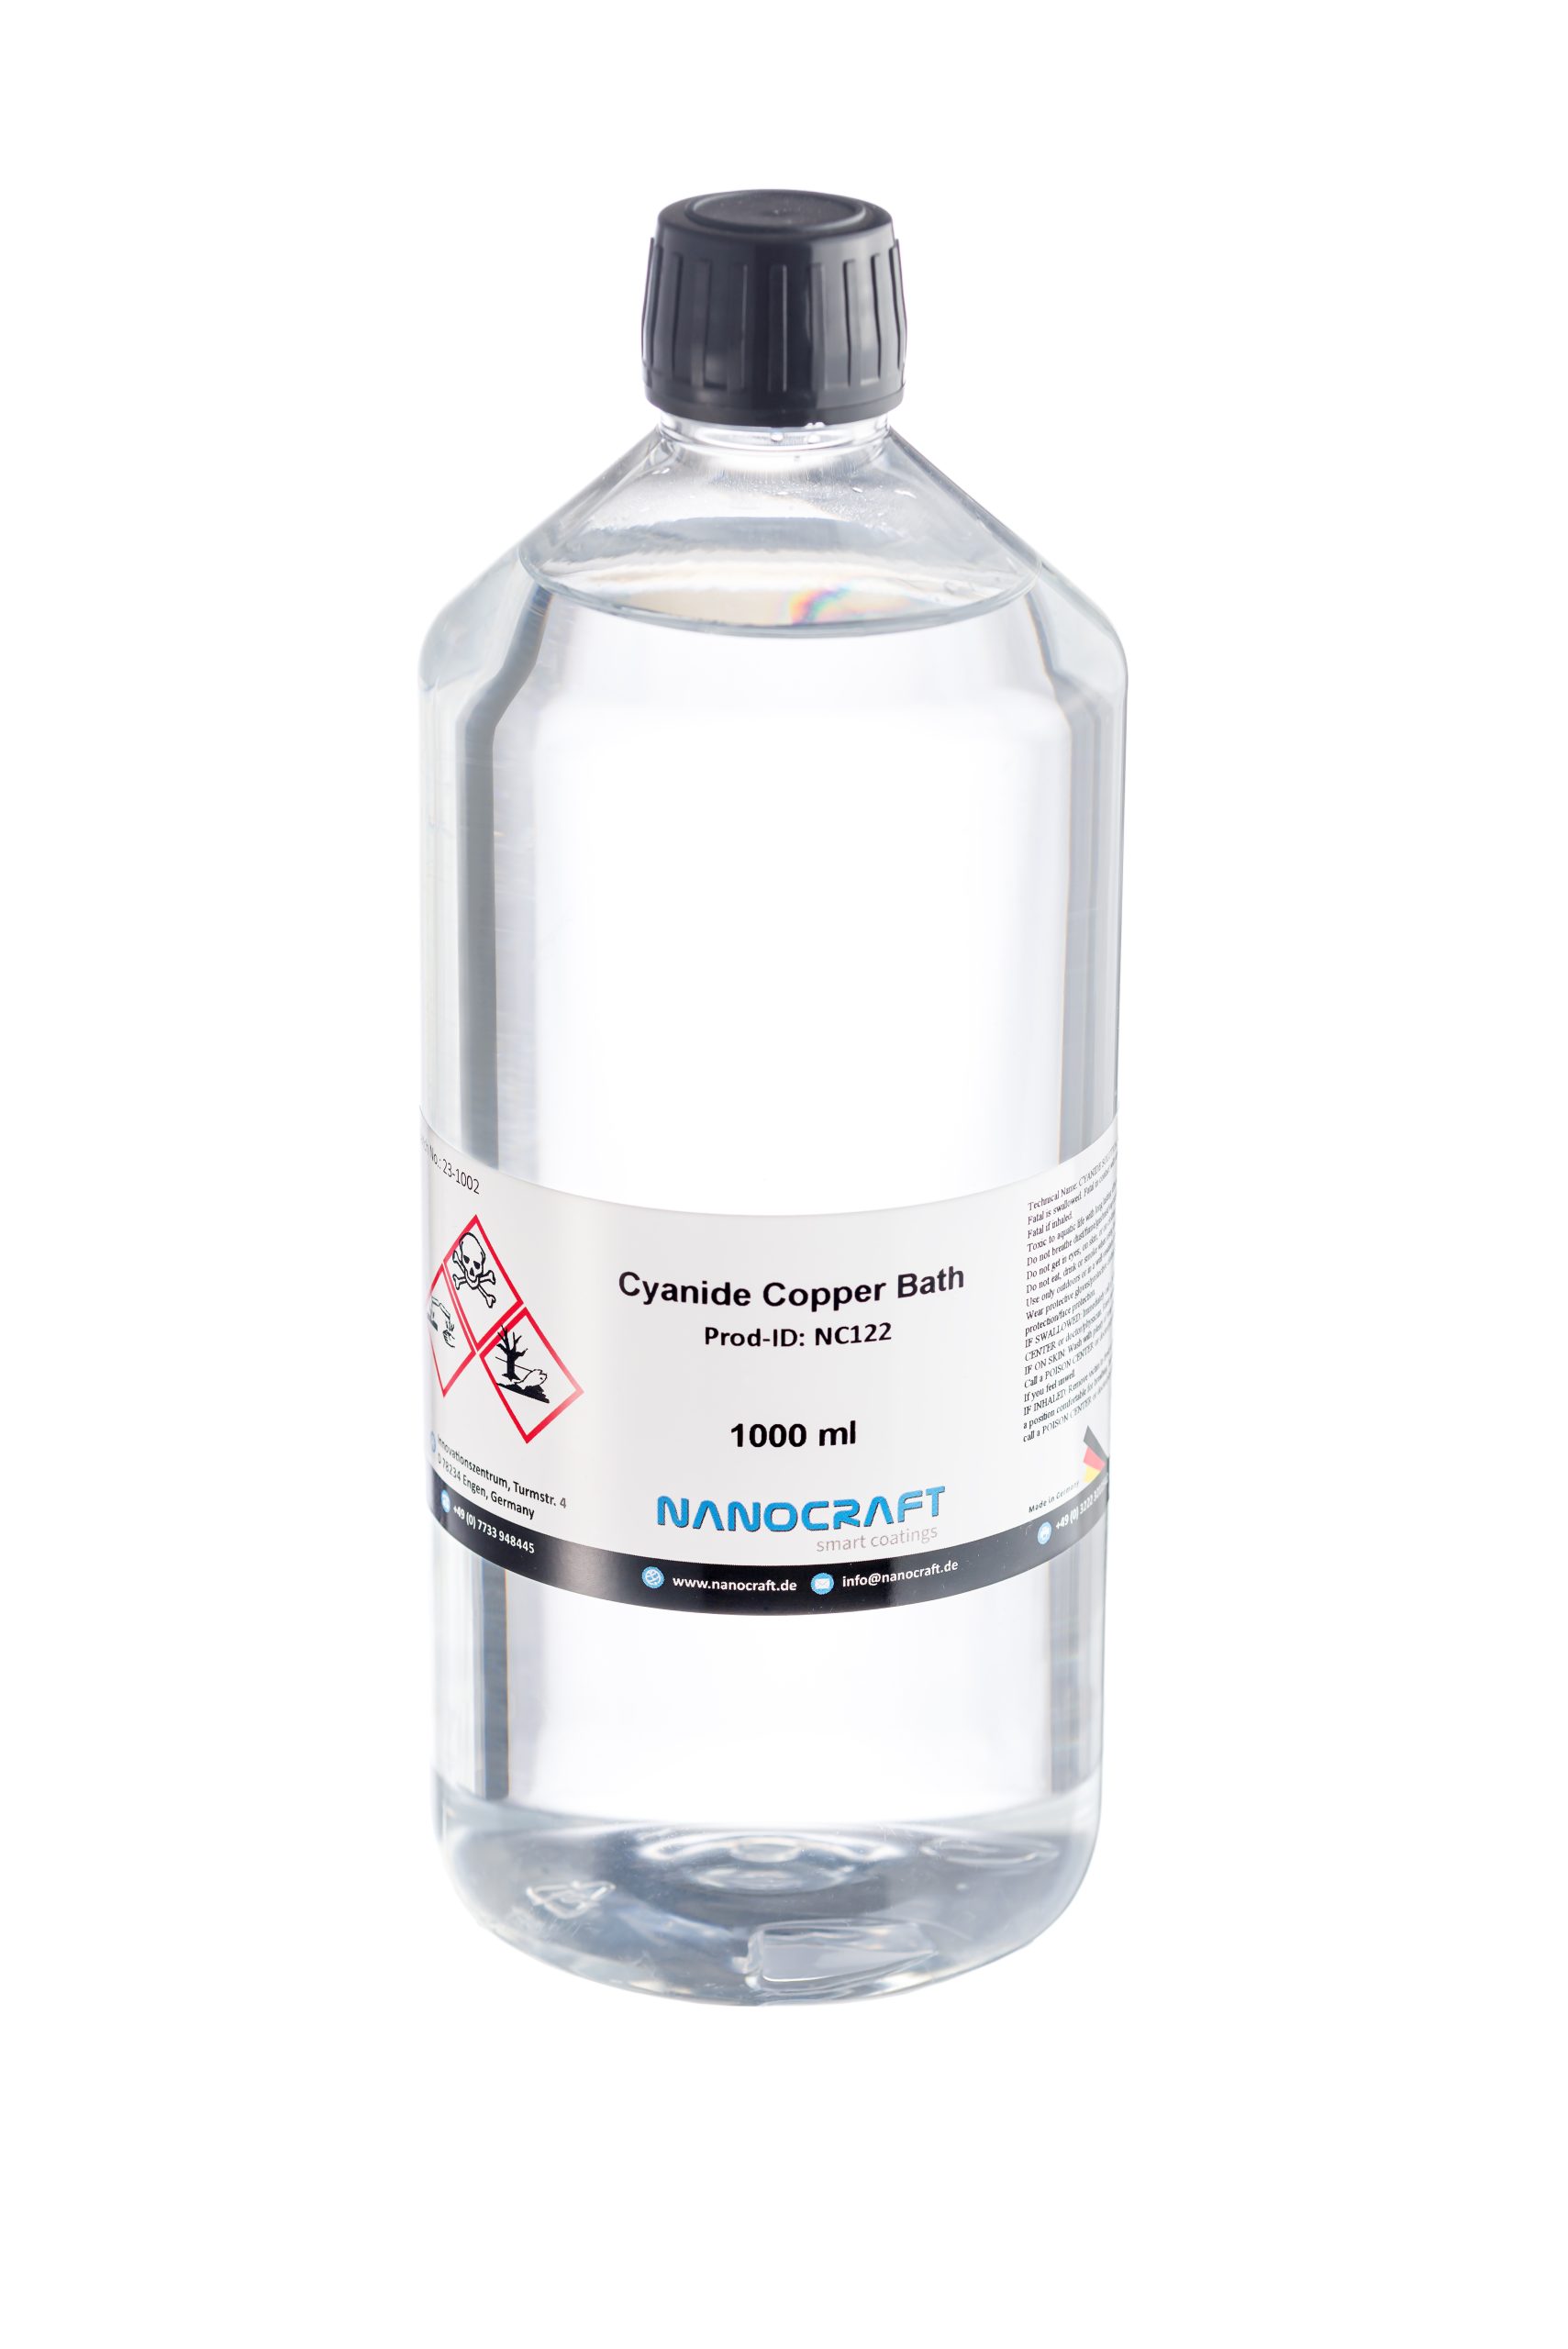 Cyanide Copper Bath Electrolyte, NANOCRAFT Prod-ID: NC122